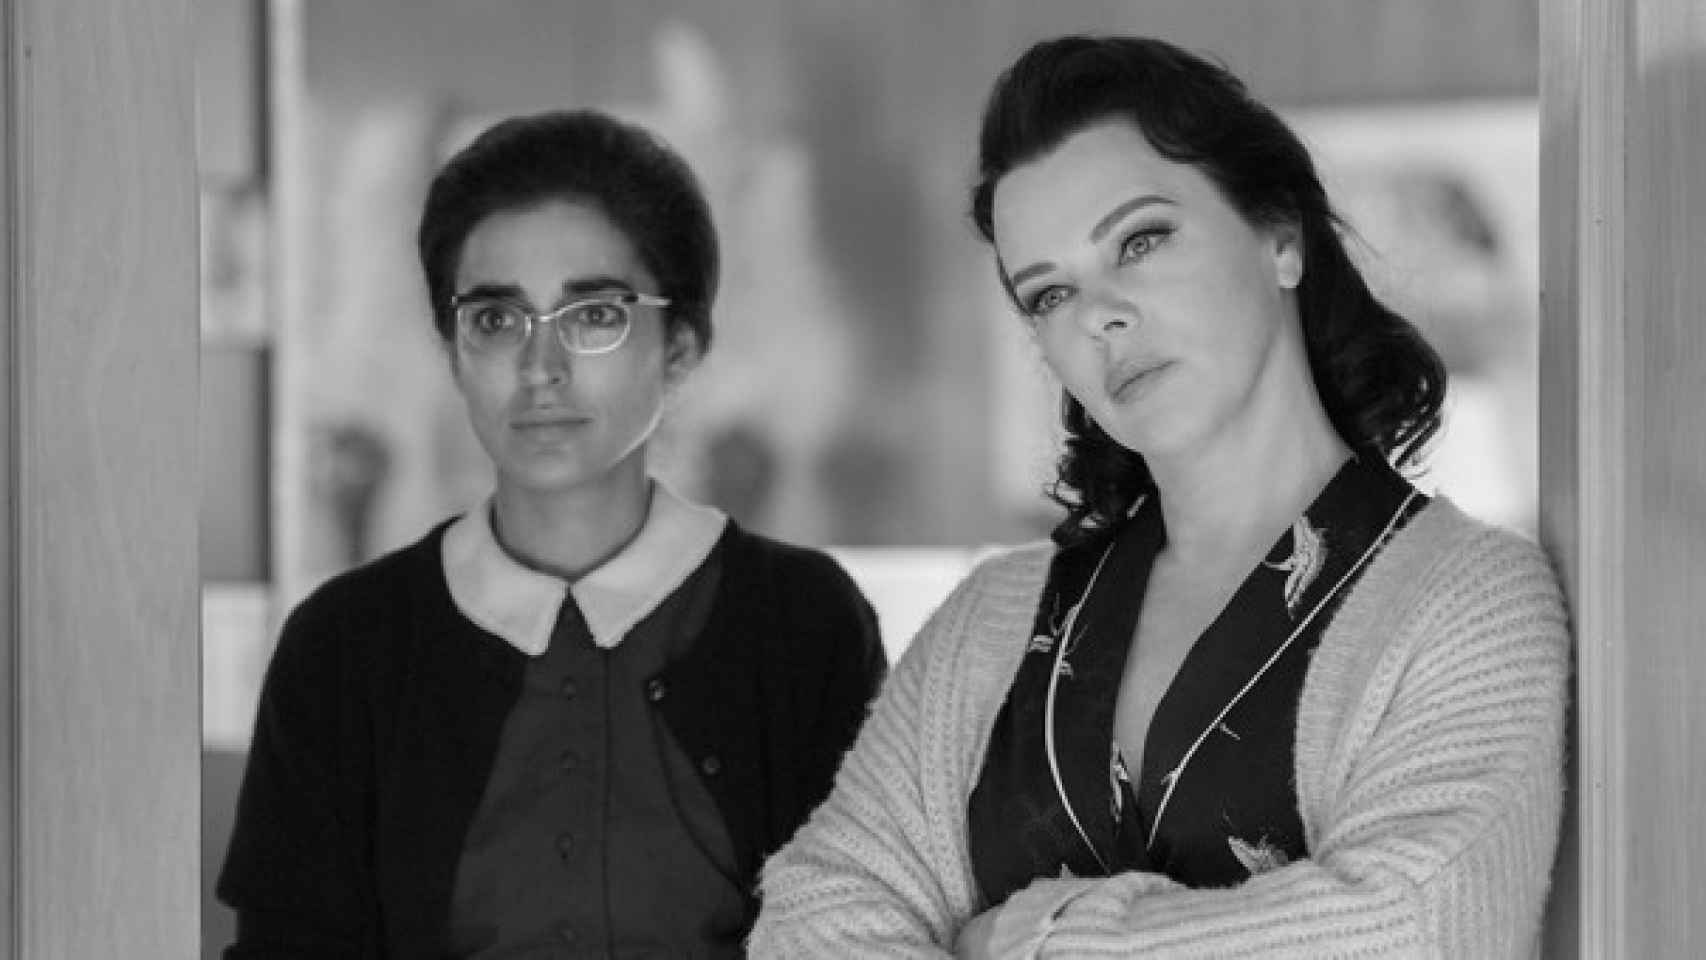 Fotograma de 'Arde Madrid': Inma Cuesta interpretando a Ana Mari y Debi Mazar como Ava Gardner.